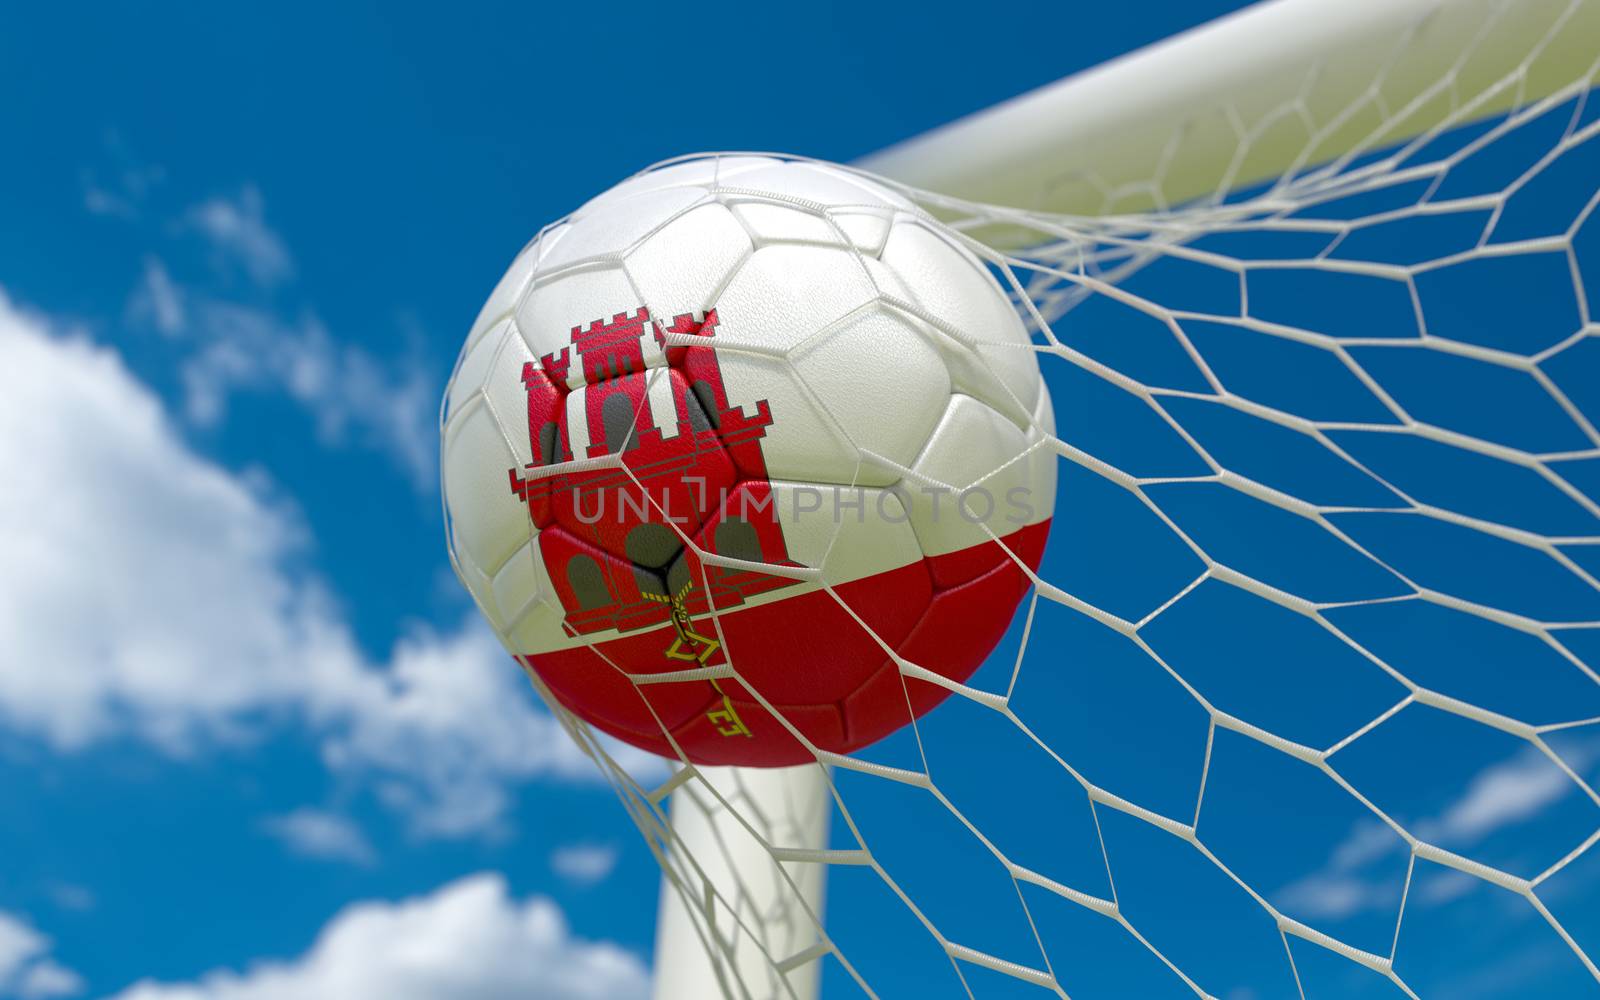 Gibraltar flag and soccer ball in goal net by Barbraford